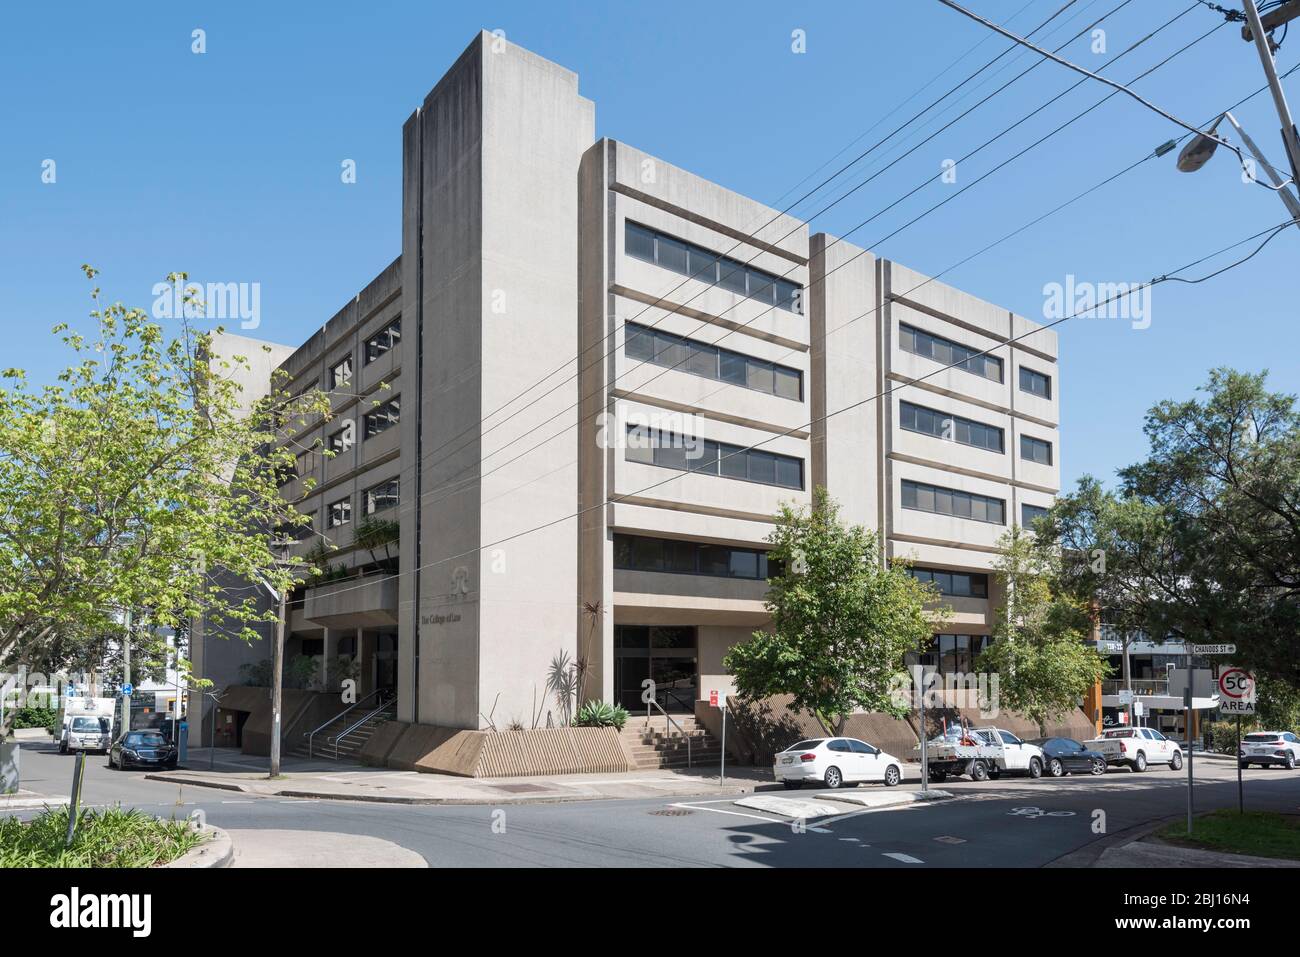 Le bâtiment du College of Law construit en 1976 dans la rue Chandos, St Leonards, dans le nord de Sydney, en Australie. Un bon exemple d'architecture Brutaliste Banque D'Images